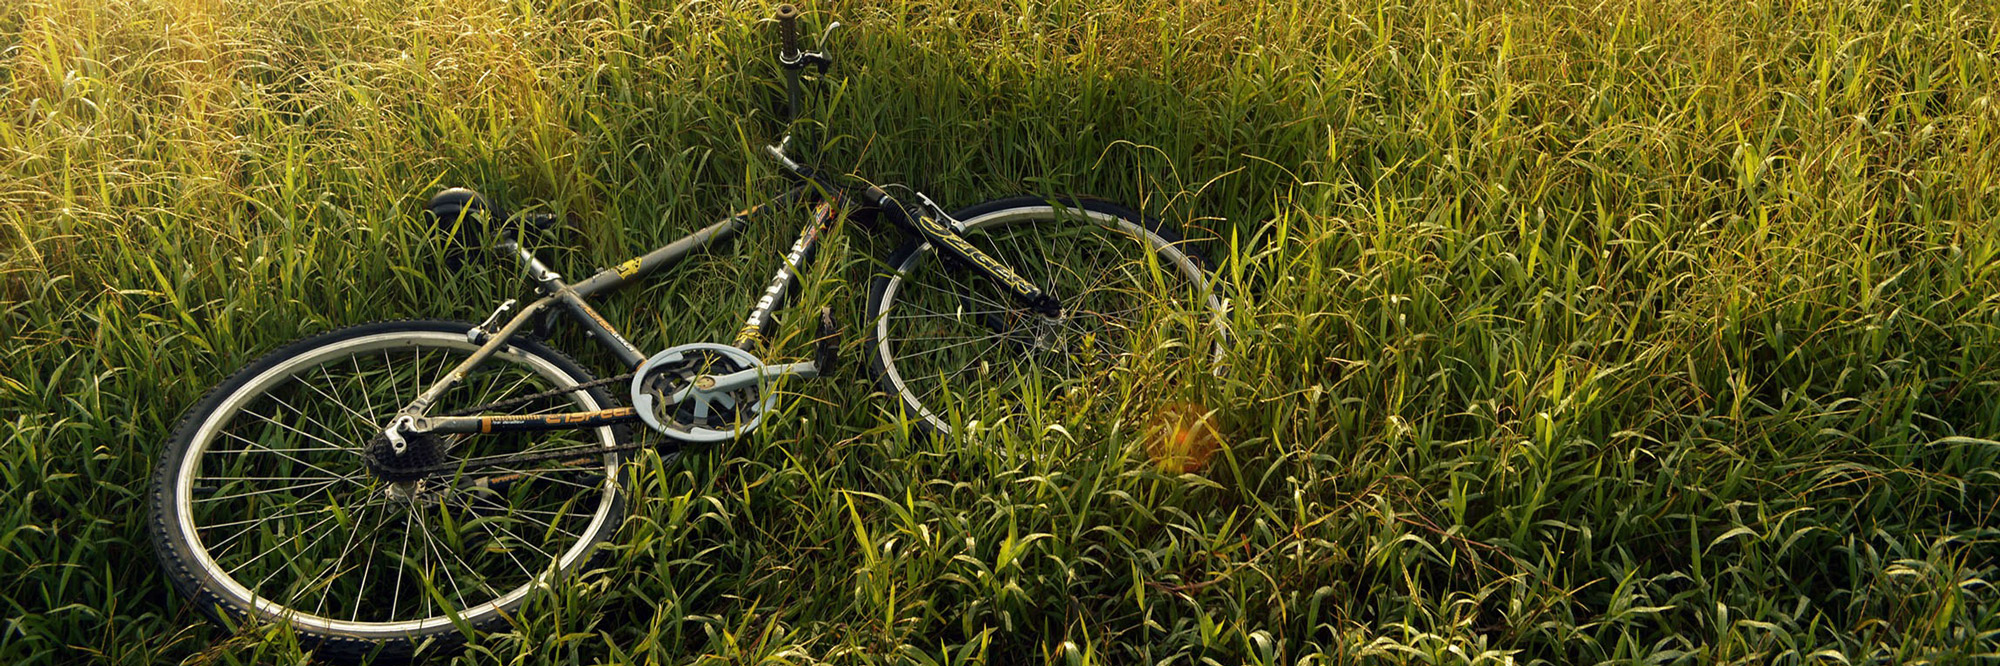 bicycle-241514.jpg